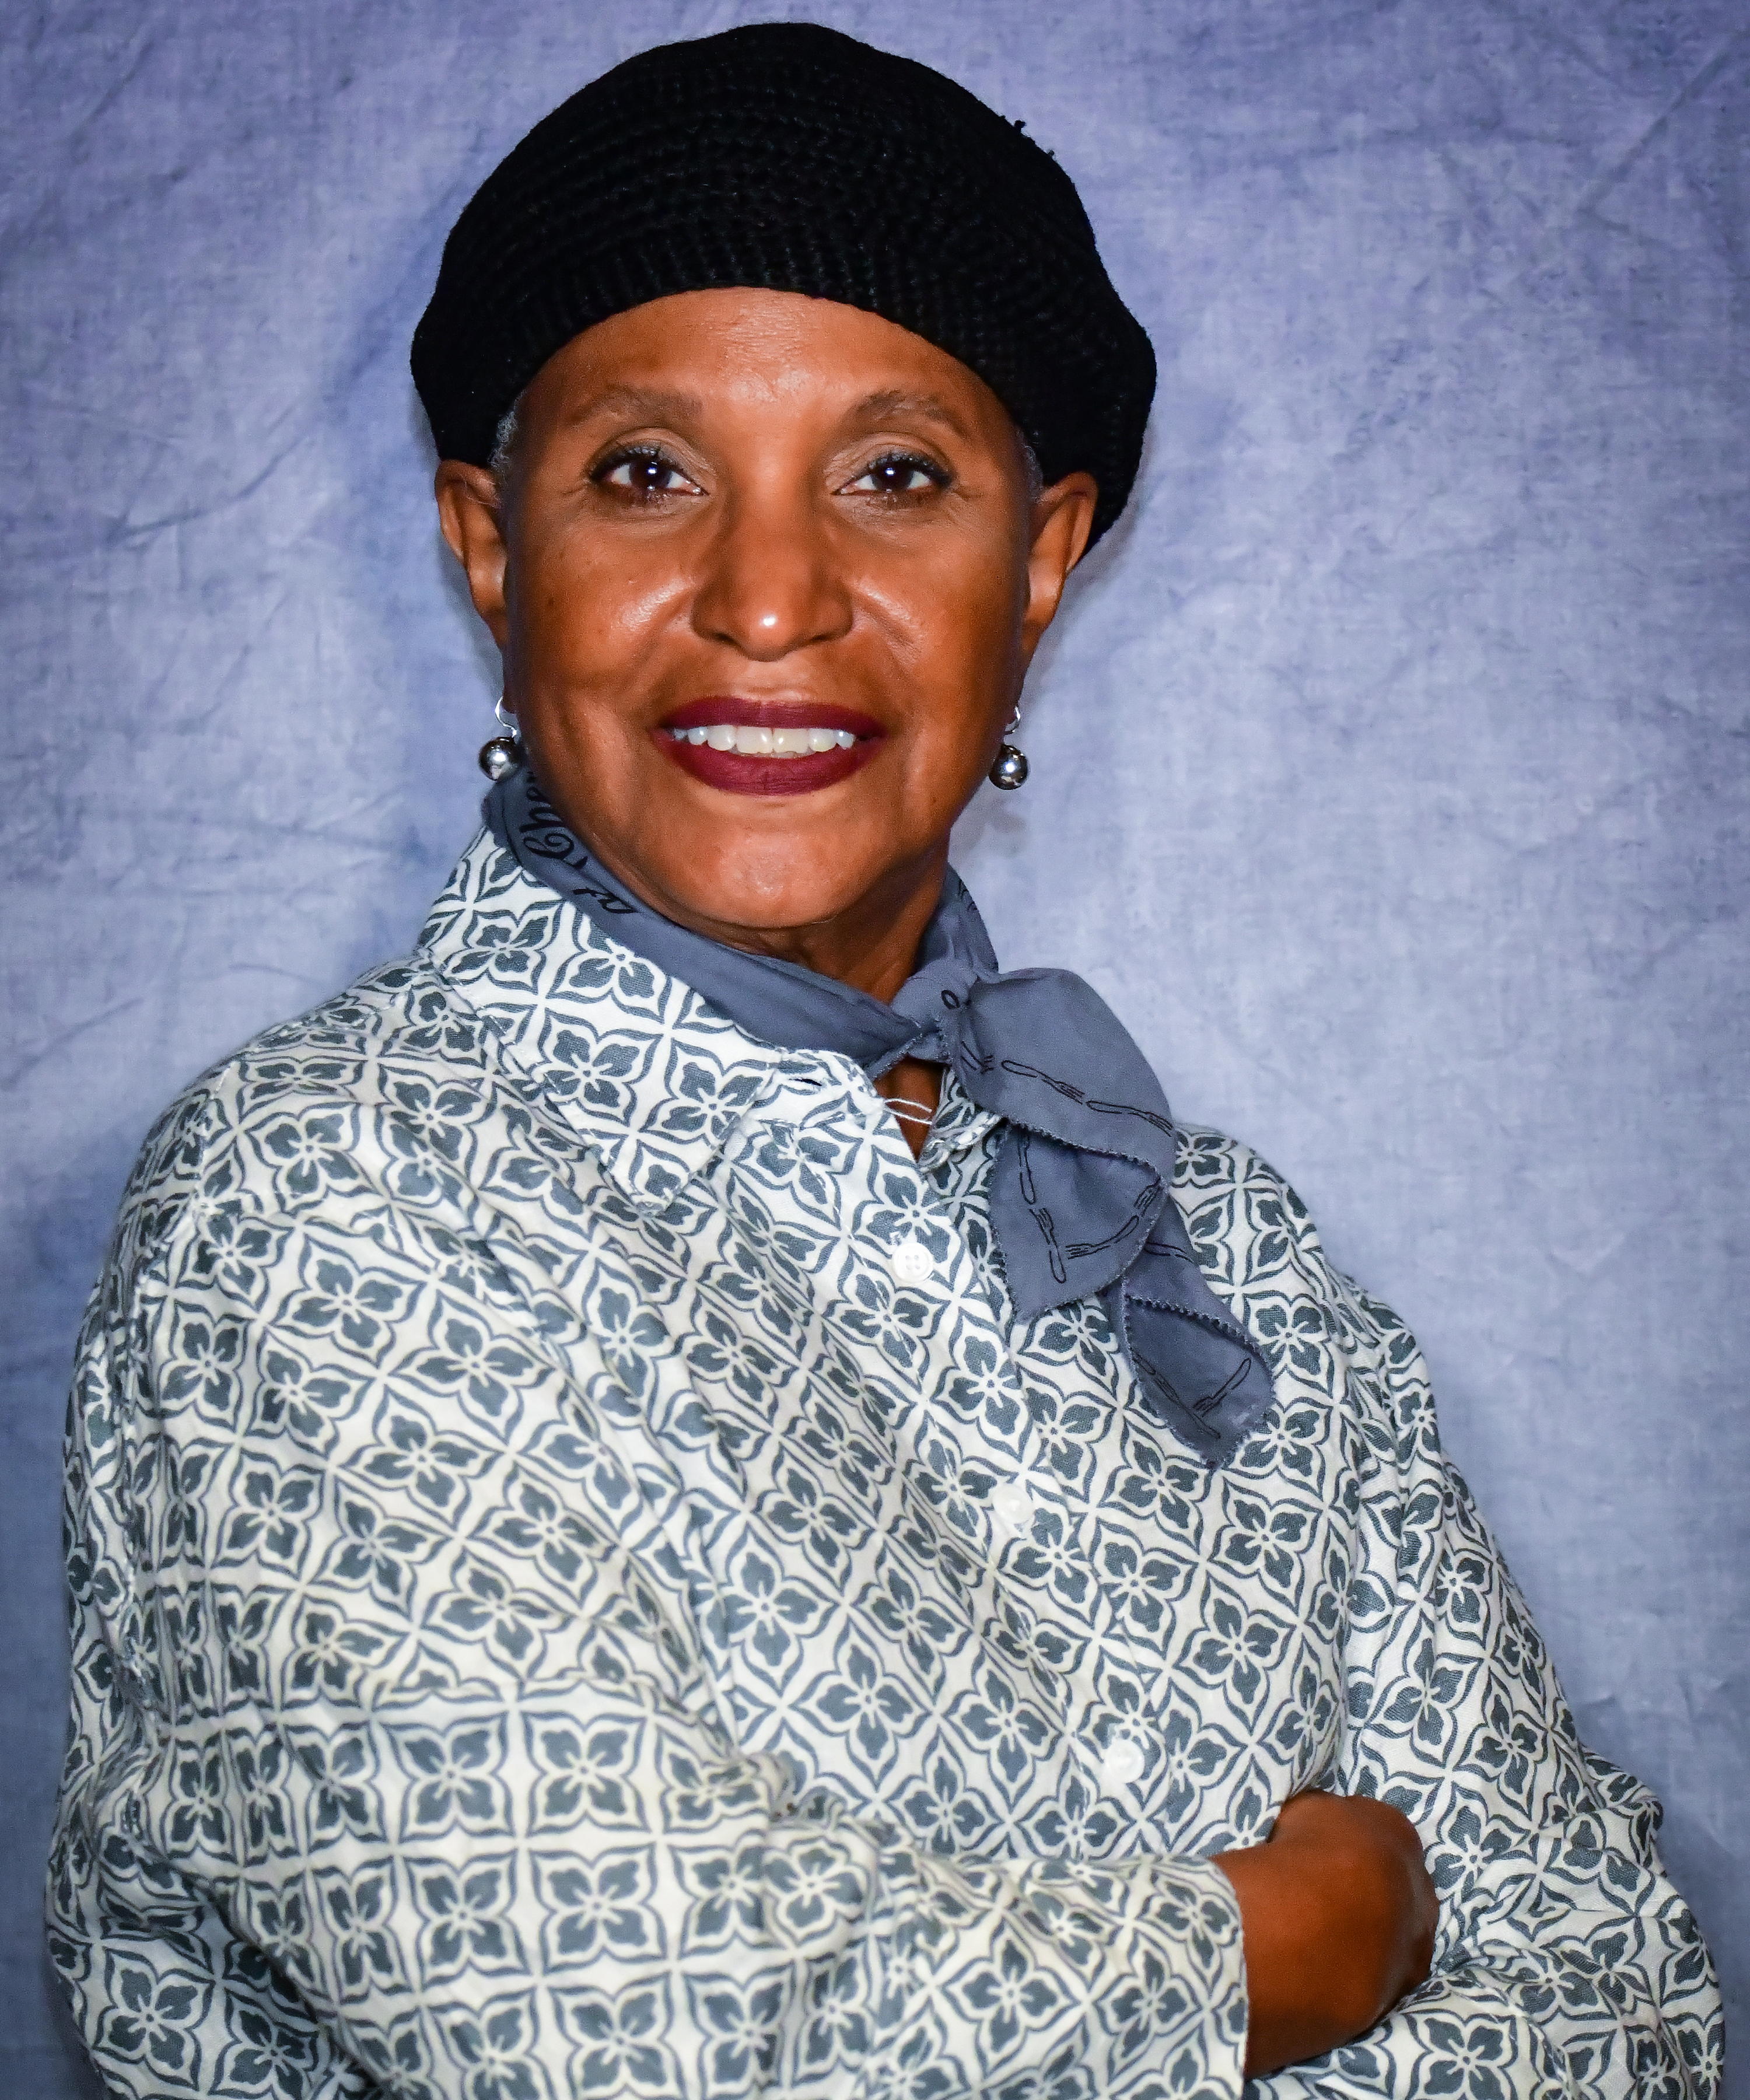 Ms. Connie Dorsey Abdul-Salaam